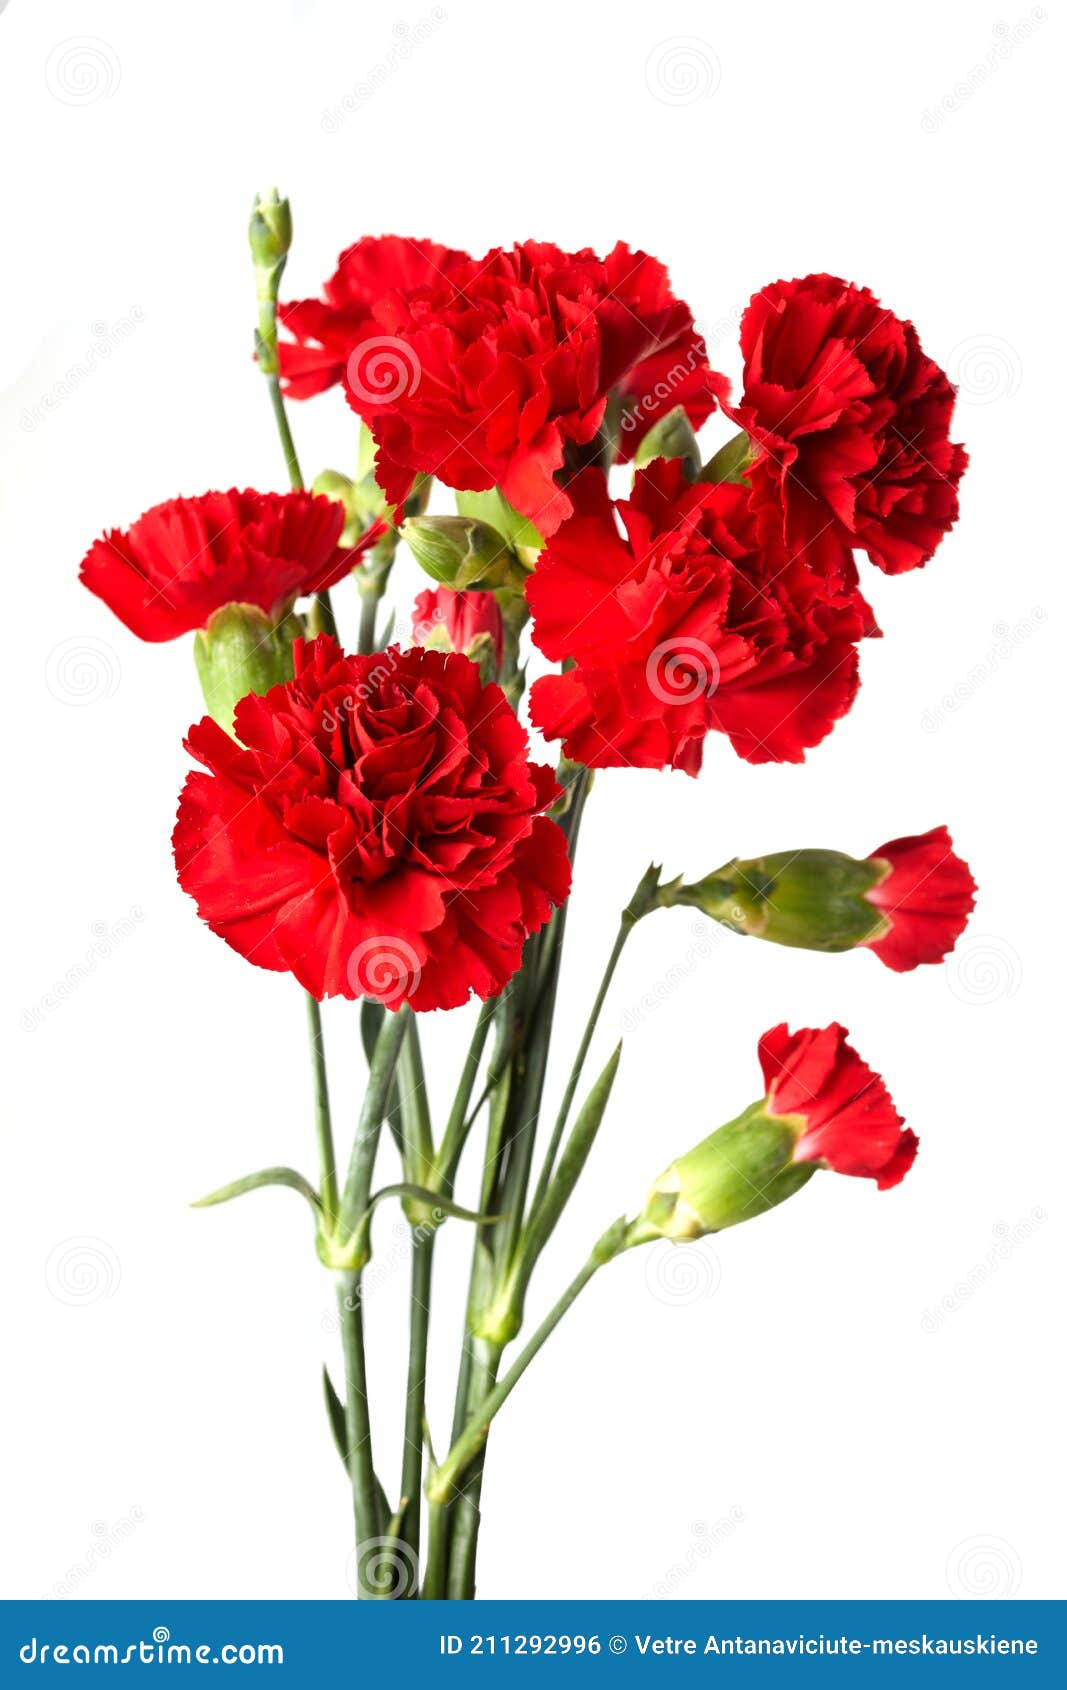 红色康乃馨花 库存照片. 图片 包括有 本质, 夏天, 红色, 植物群, 华伦泰, 康乃馨, 特写镜头 - 143785552